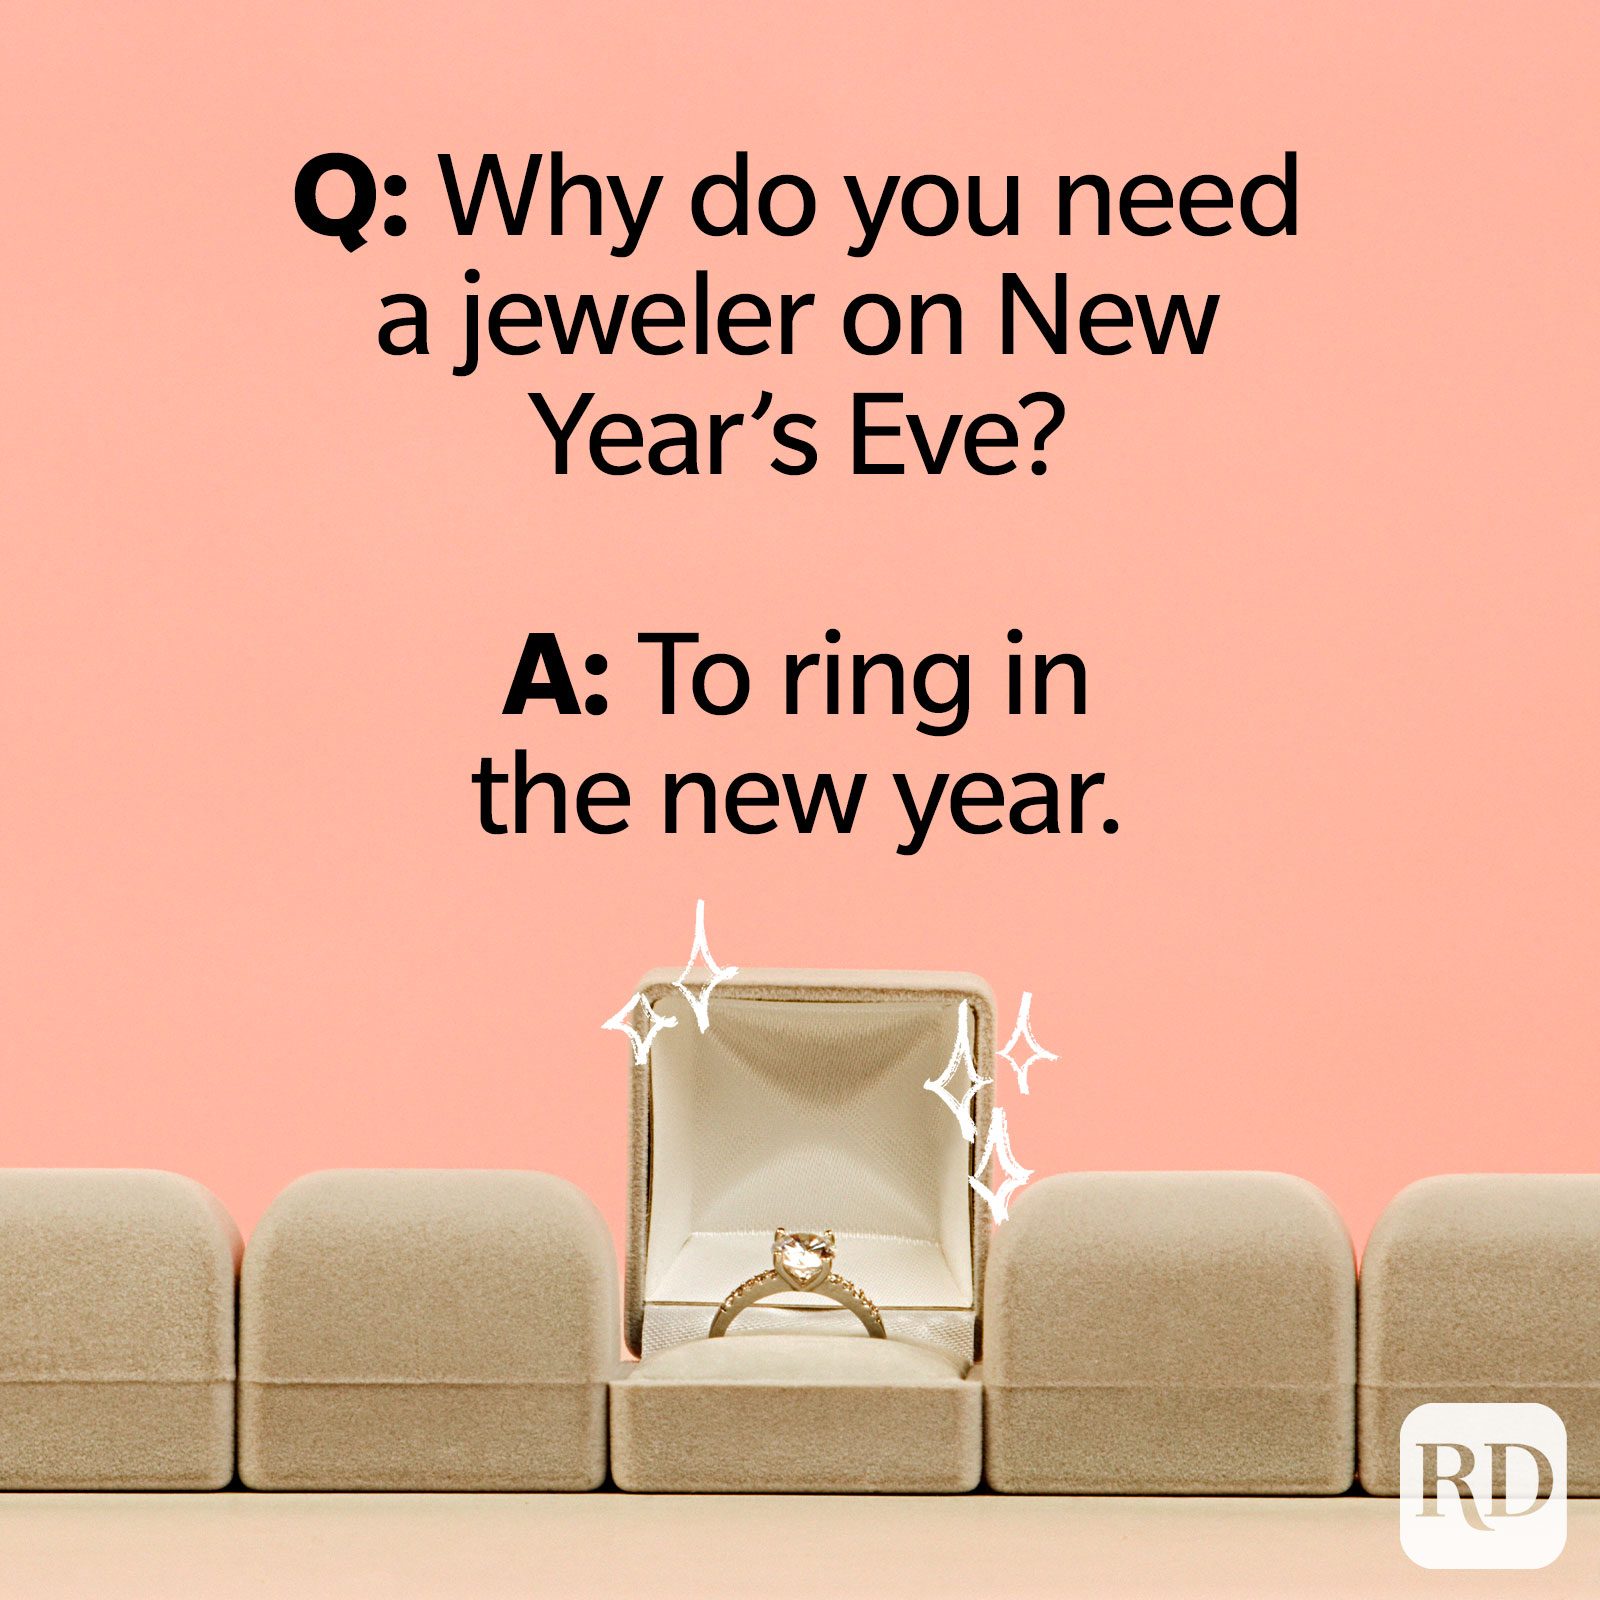 Q: Porque precisa de um joalheiro na véspera de Ano Novo? R: Para tocar no Ano Novo.